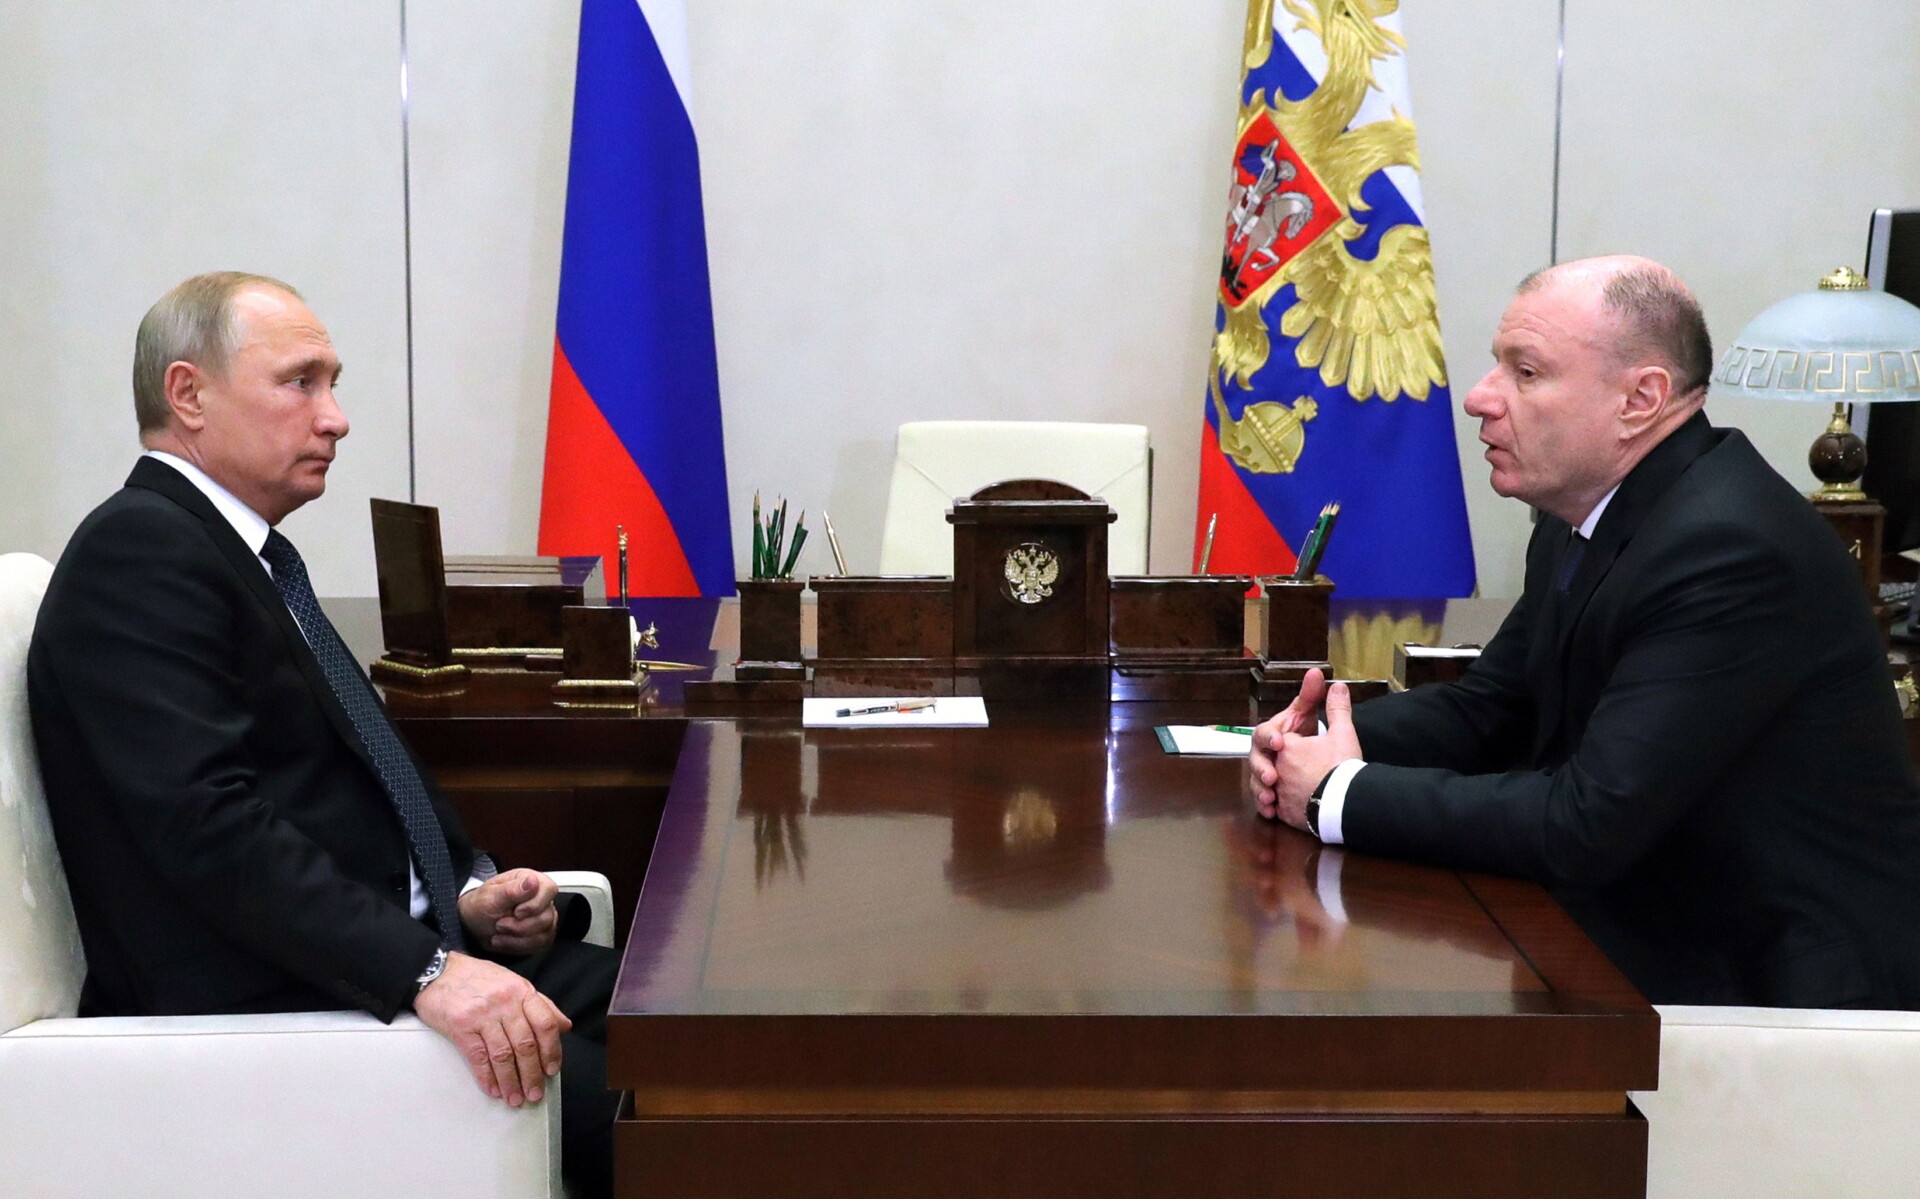 Ο Βλαντίμιρ Ποτάνιν σε συνάντηση με τον Βλαντίμιρ Πούτιν © EPA/MICHAEL KLIMENTYEV / SPUTNIK / KREMLIN POOL MANDATORY CREDIT